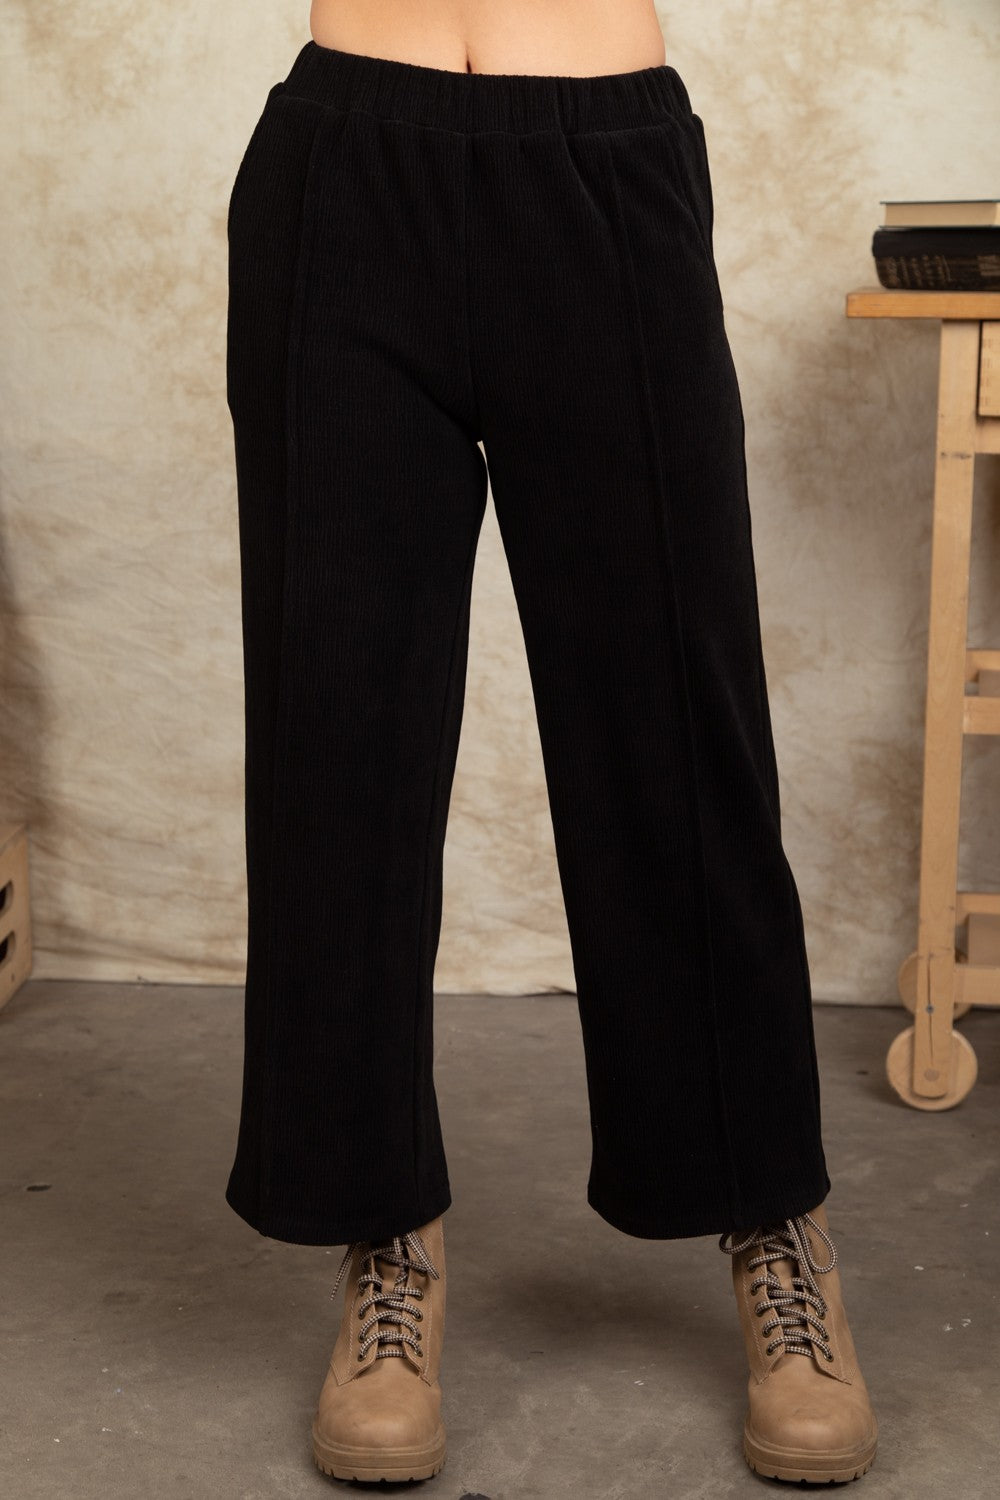 Plus Size Corduroy Pants - Multiple Colors